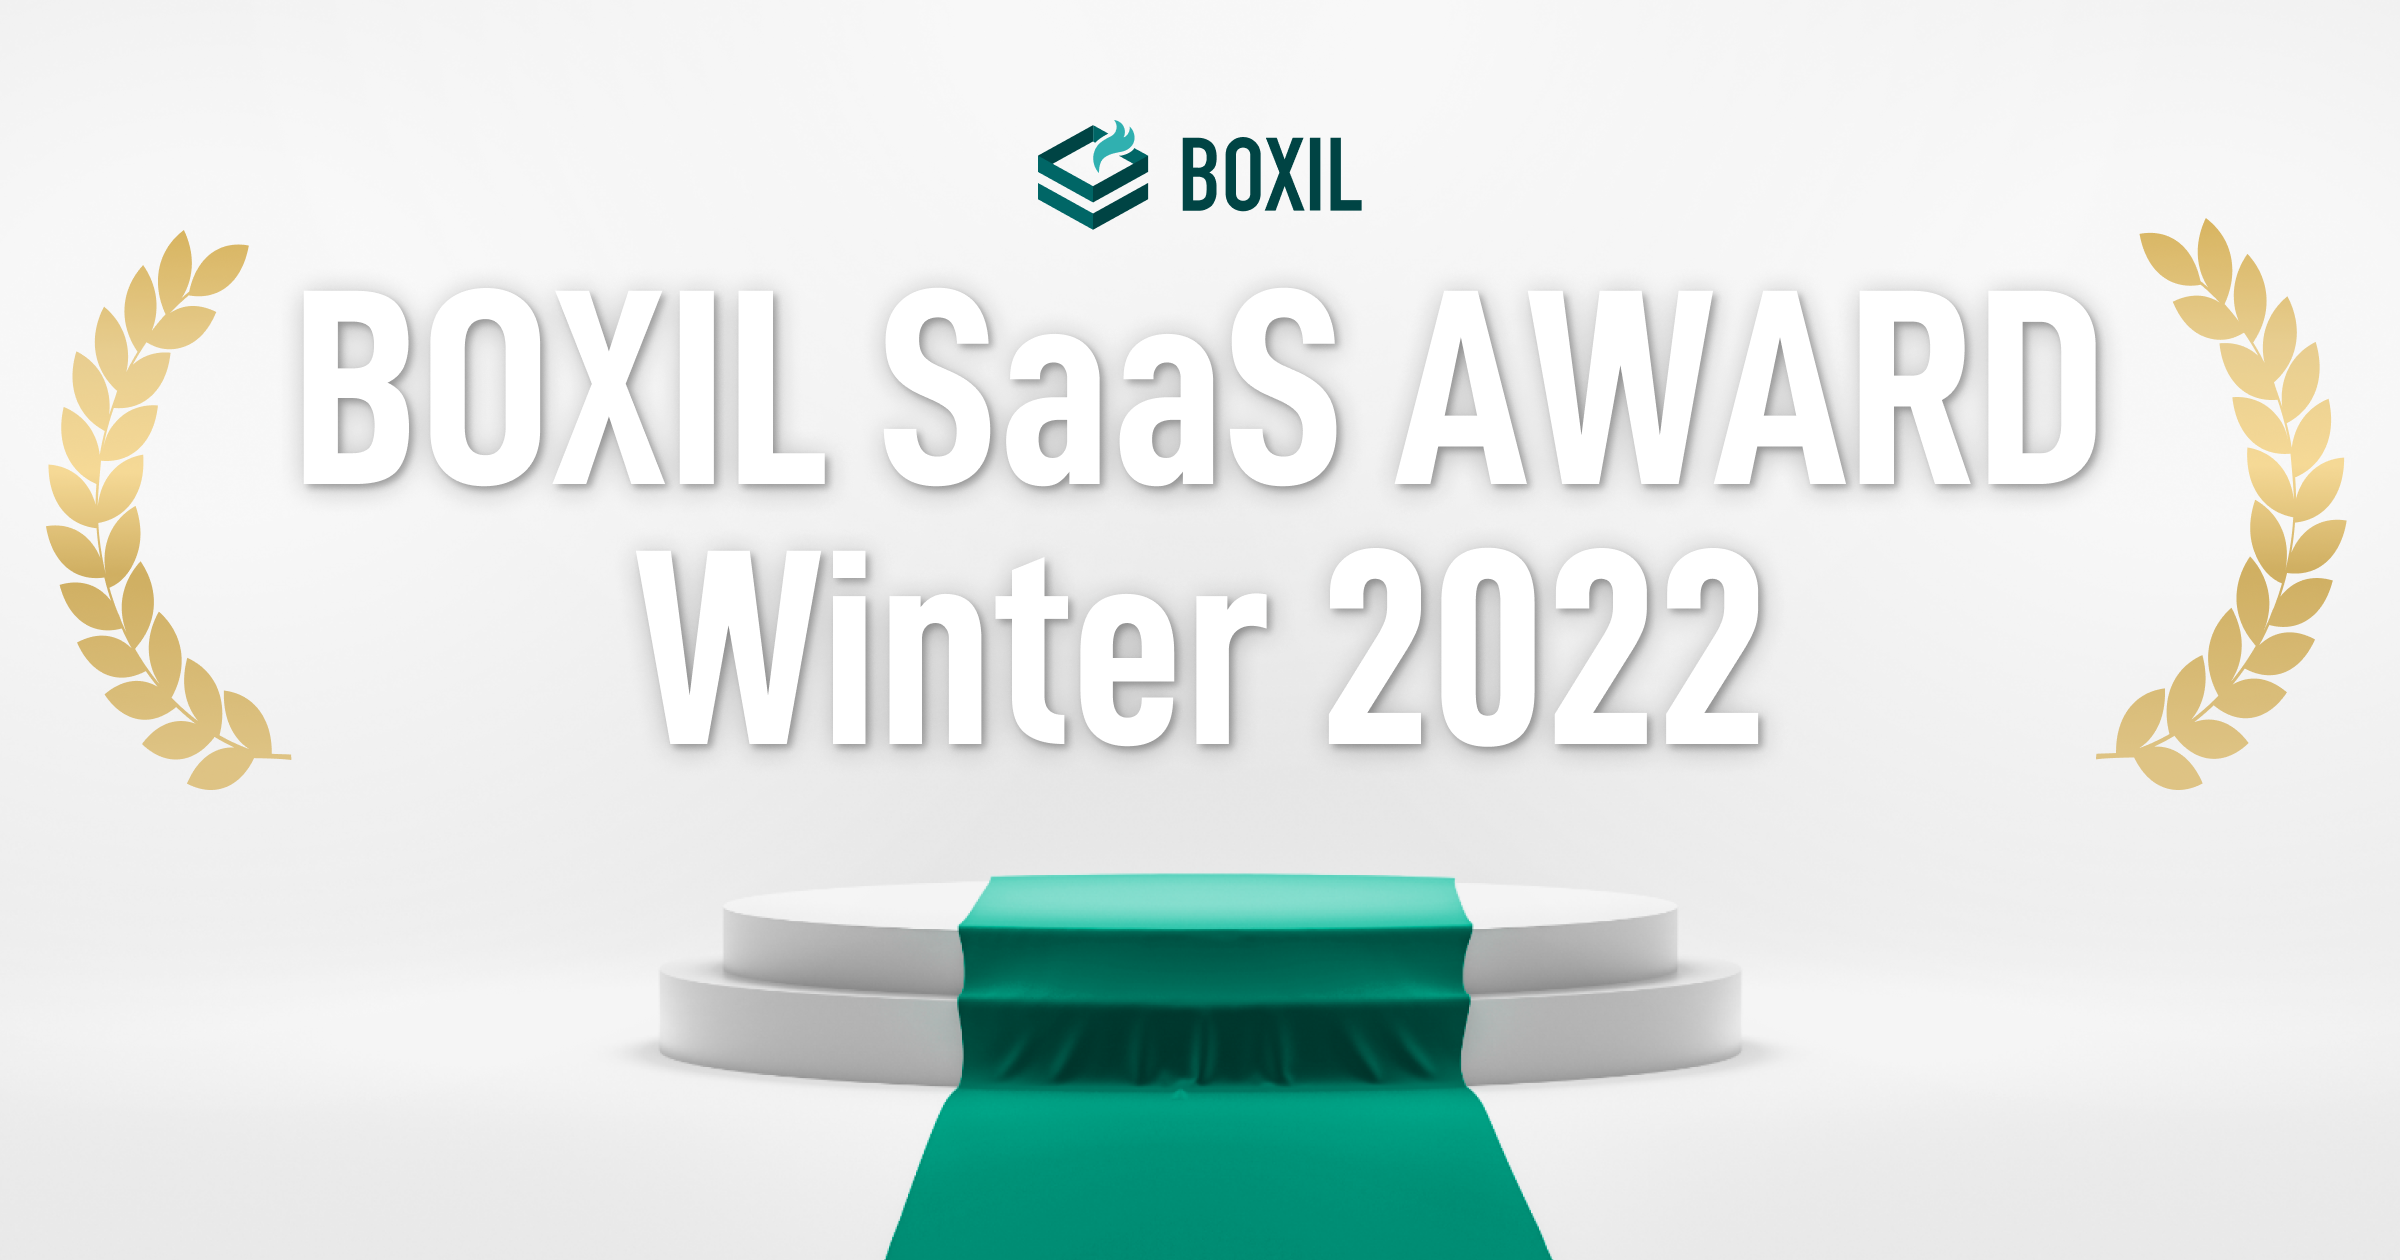 プレスリリース用画像テンプレート1_BOXIL SaaS AWARD Winter 2022